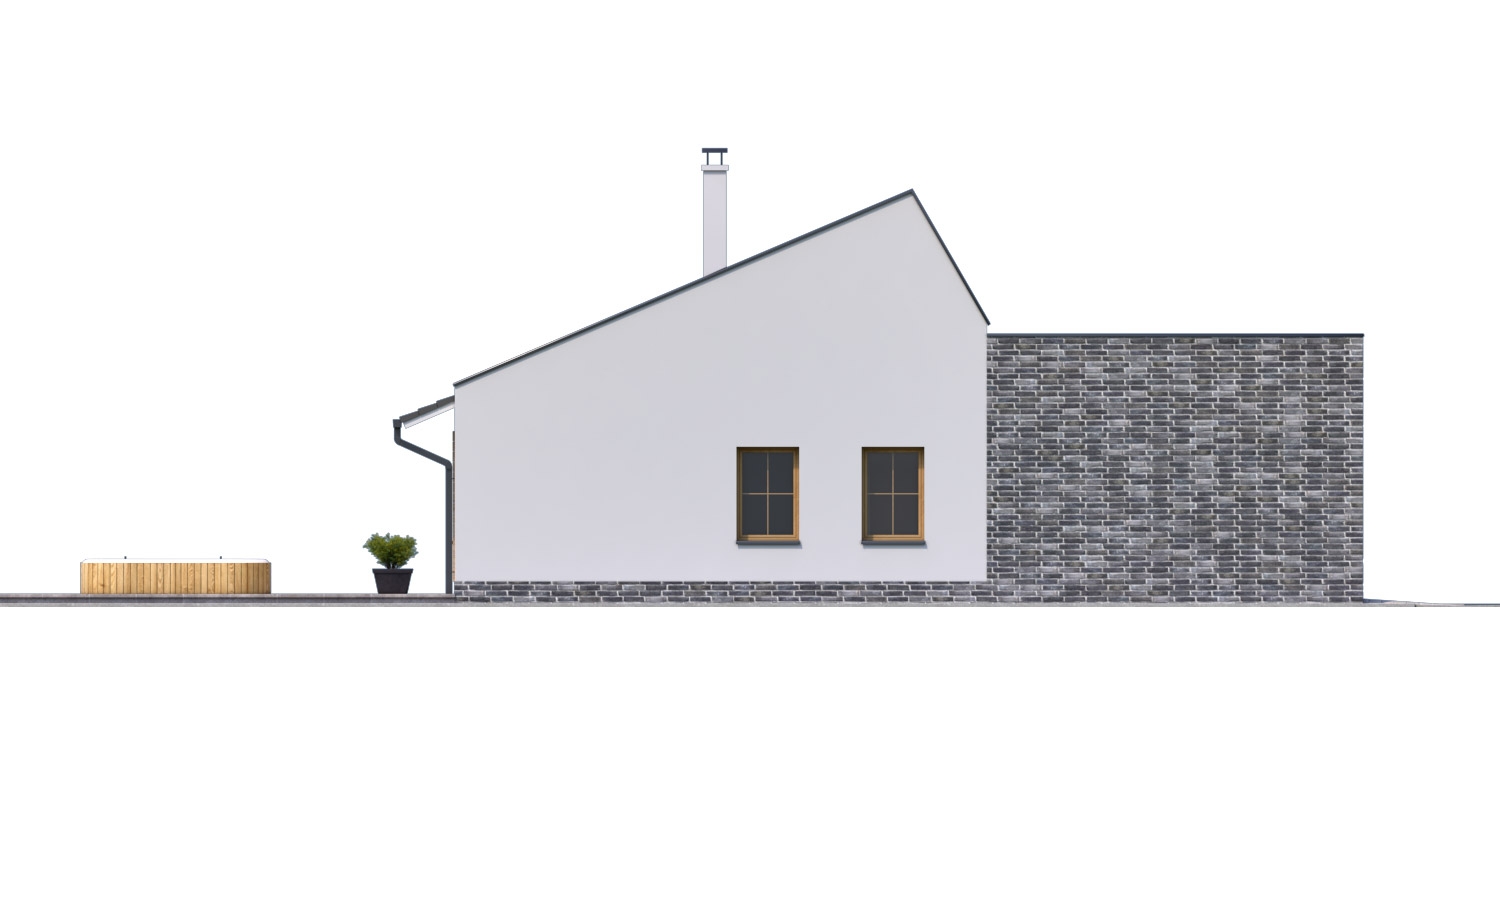 Zrkadlový pohľad 4. - Moderní rodinný dům s garáží pro 4 až 5 člennou rodinku. Možnost změnit tvar střechy, případně realizovat dům bez garáže. Vhodný i jako dvojdům.